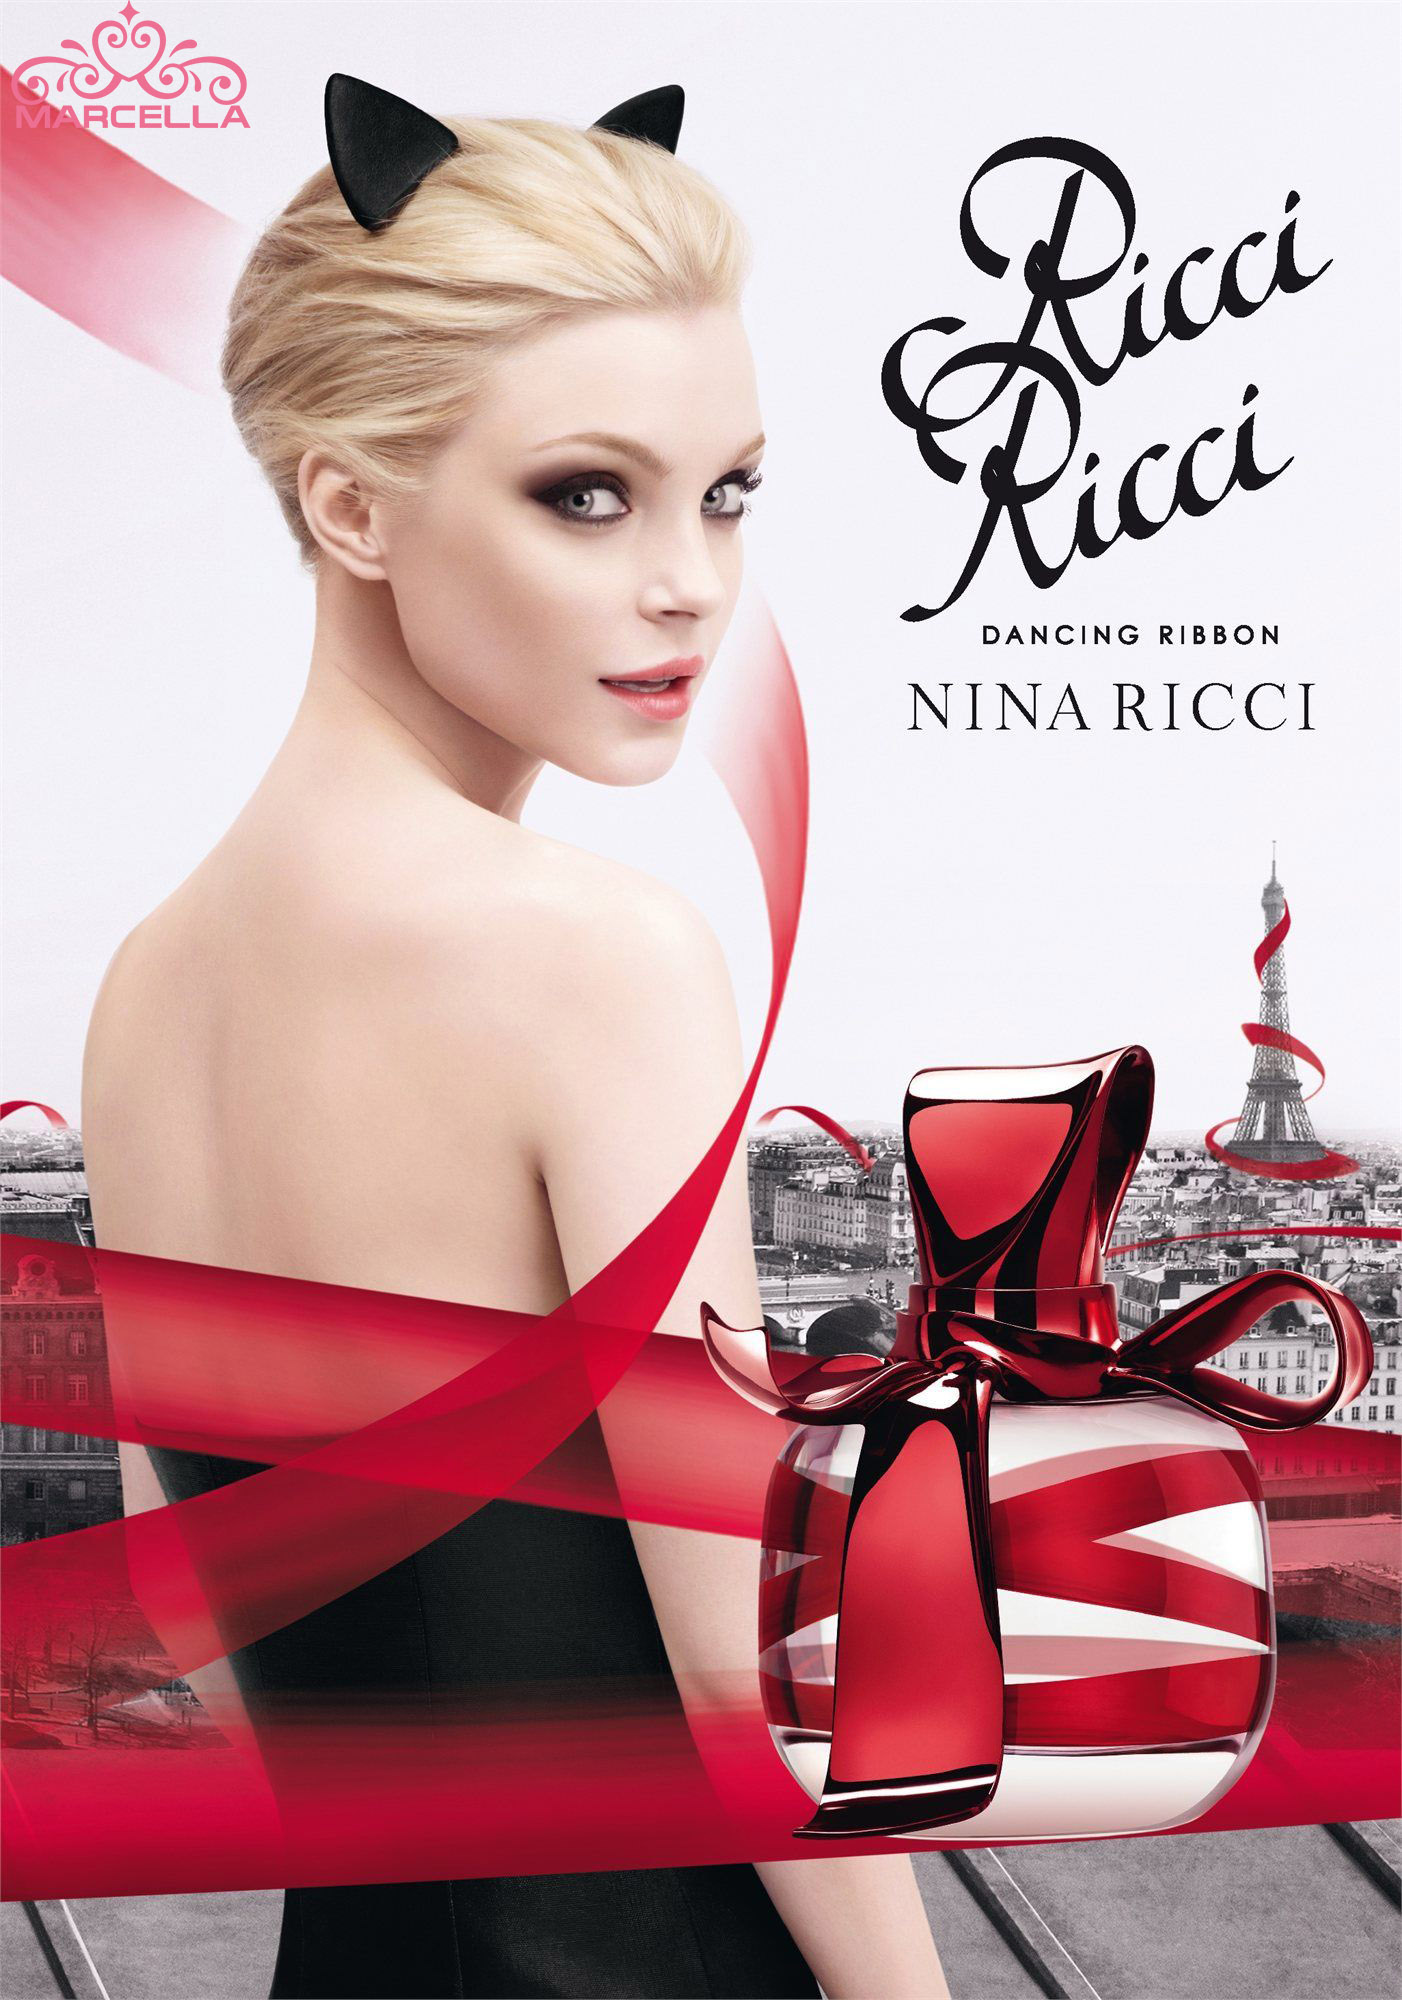 خرید عطر (ادکلن) نینا ریچی ریچی دنسینگ ریبون زنانه Nina Ricci Ricci Ricci Dancing Ribbon اصل